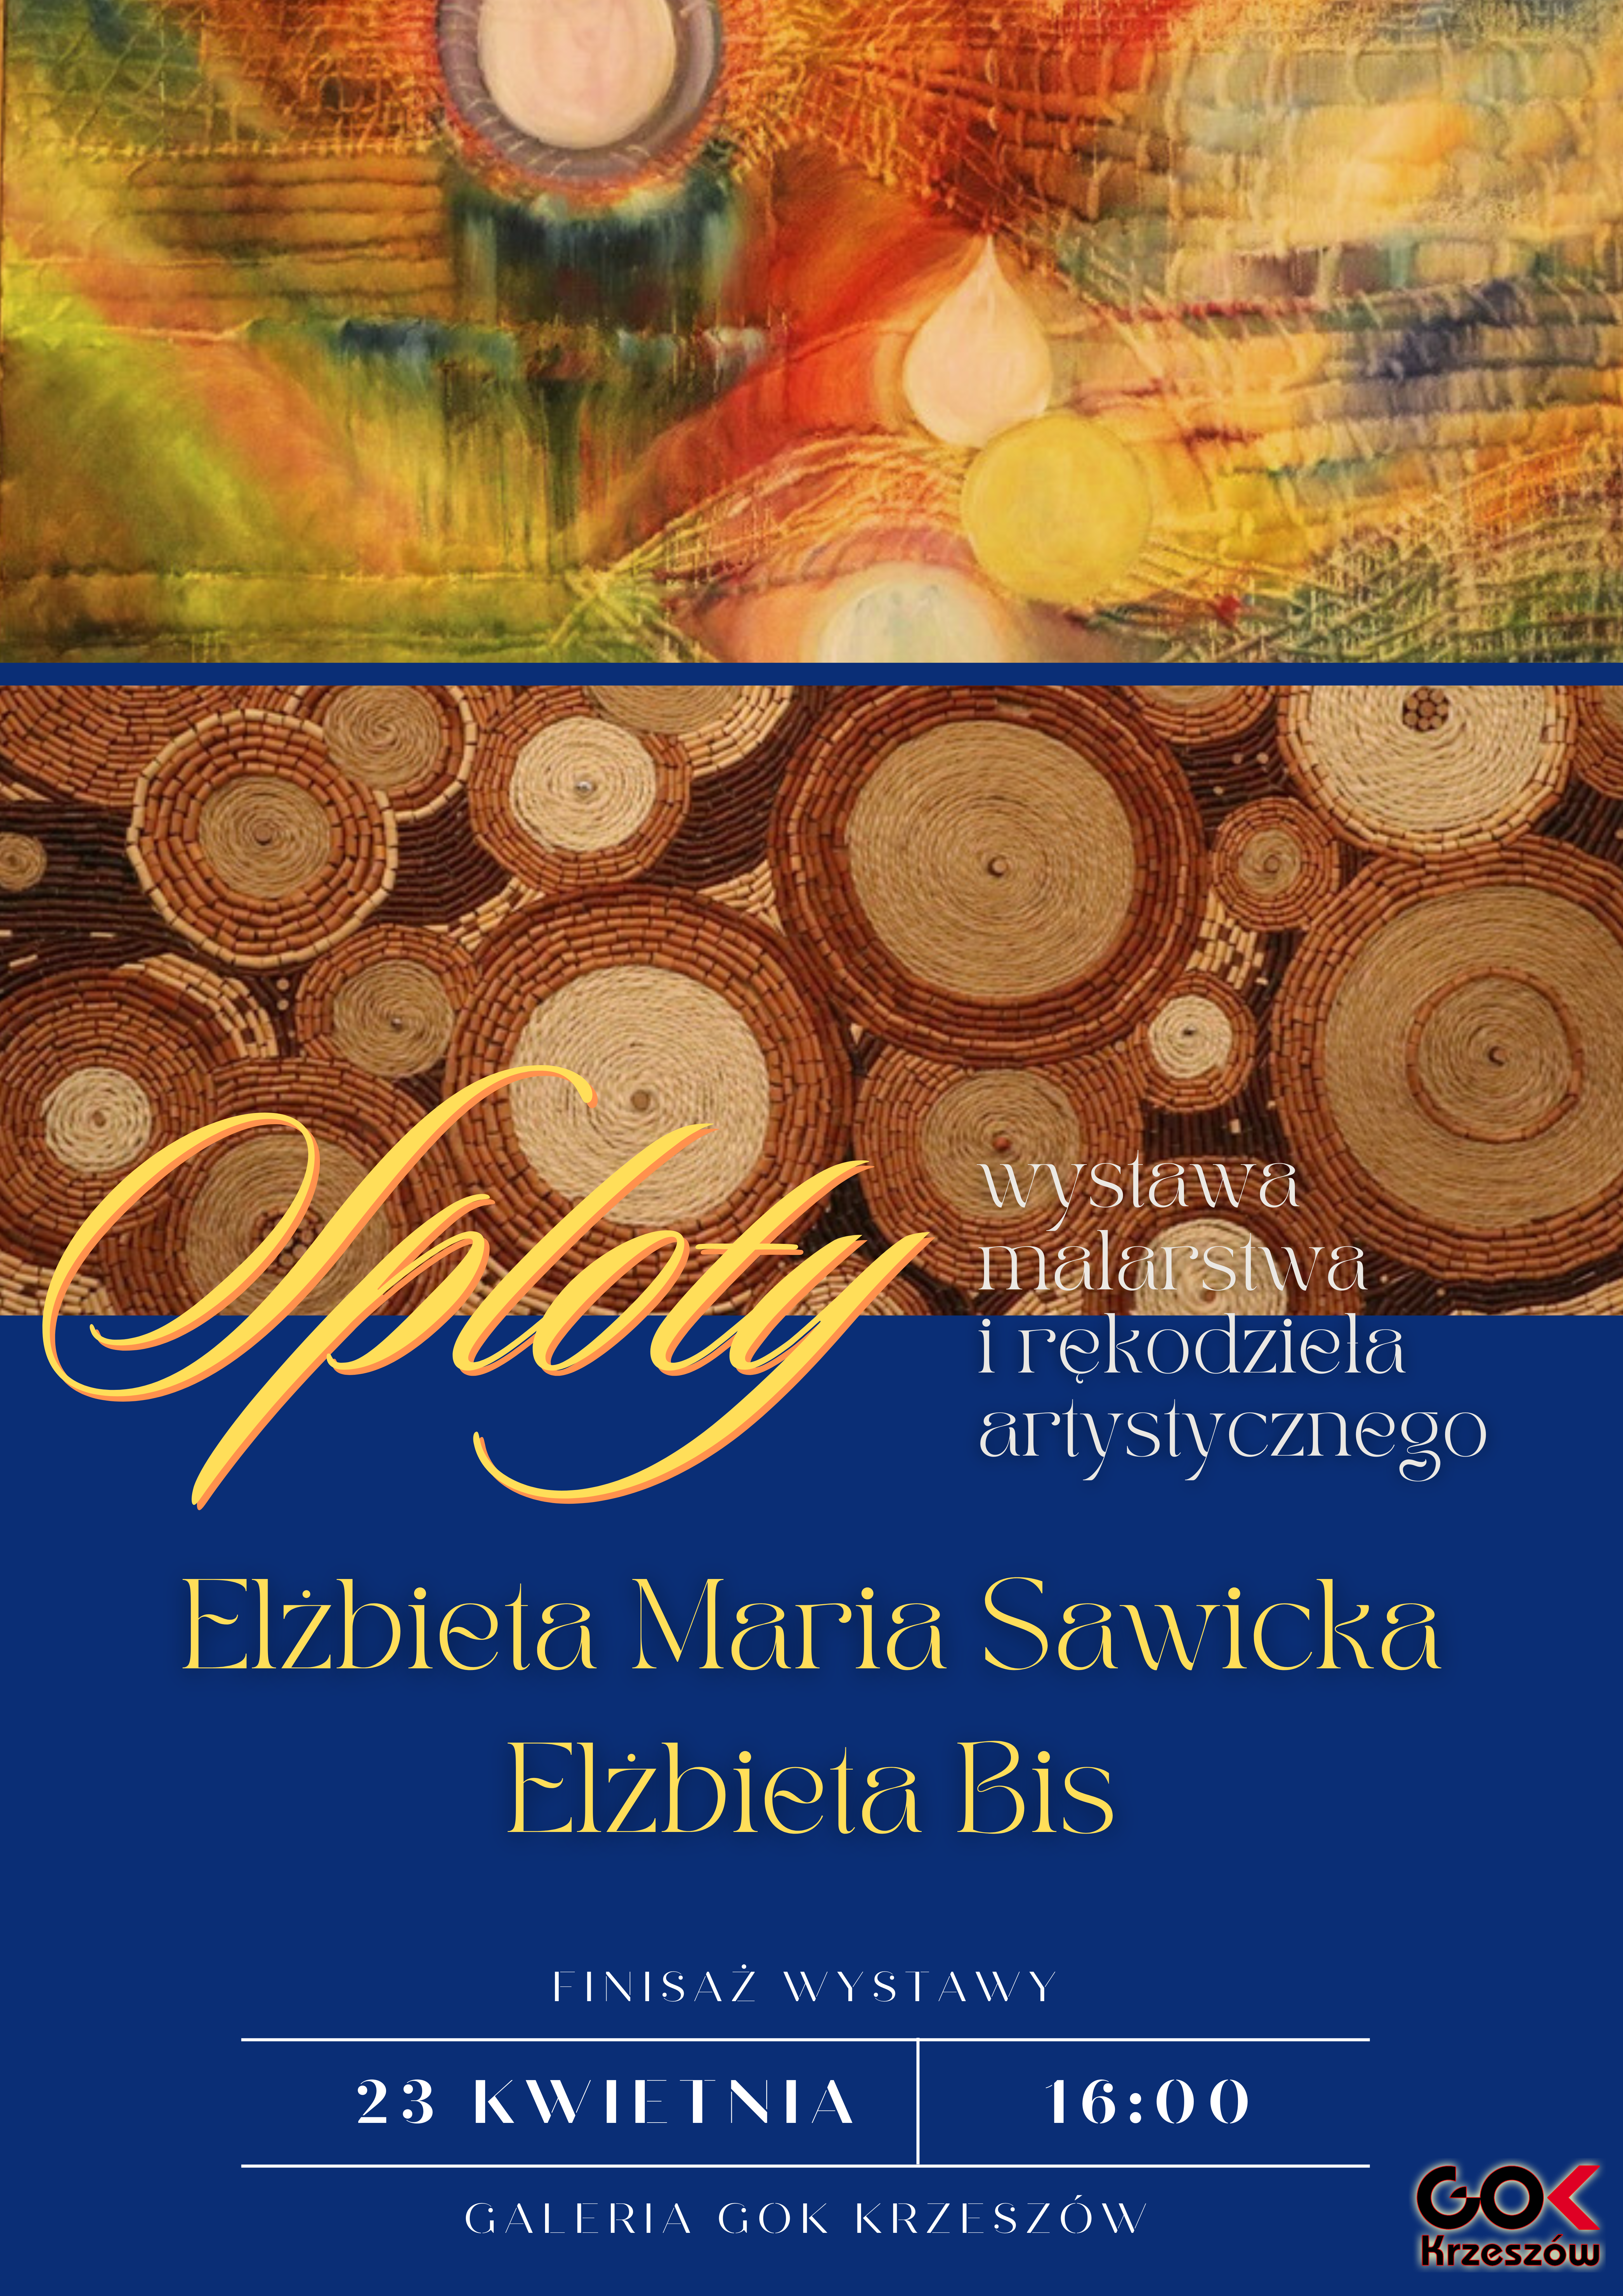 Wystawa malarstwa i rękodzieła artystycznego „SPLOTY” Elżbiety Sawickiej i Elżbiety Bis